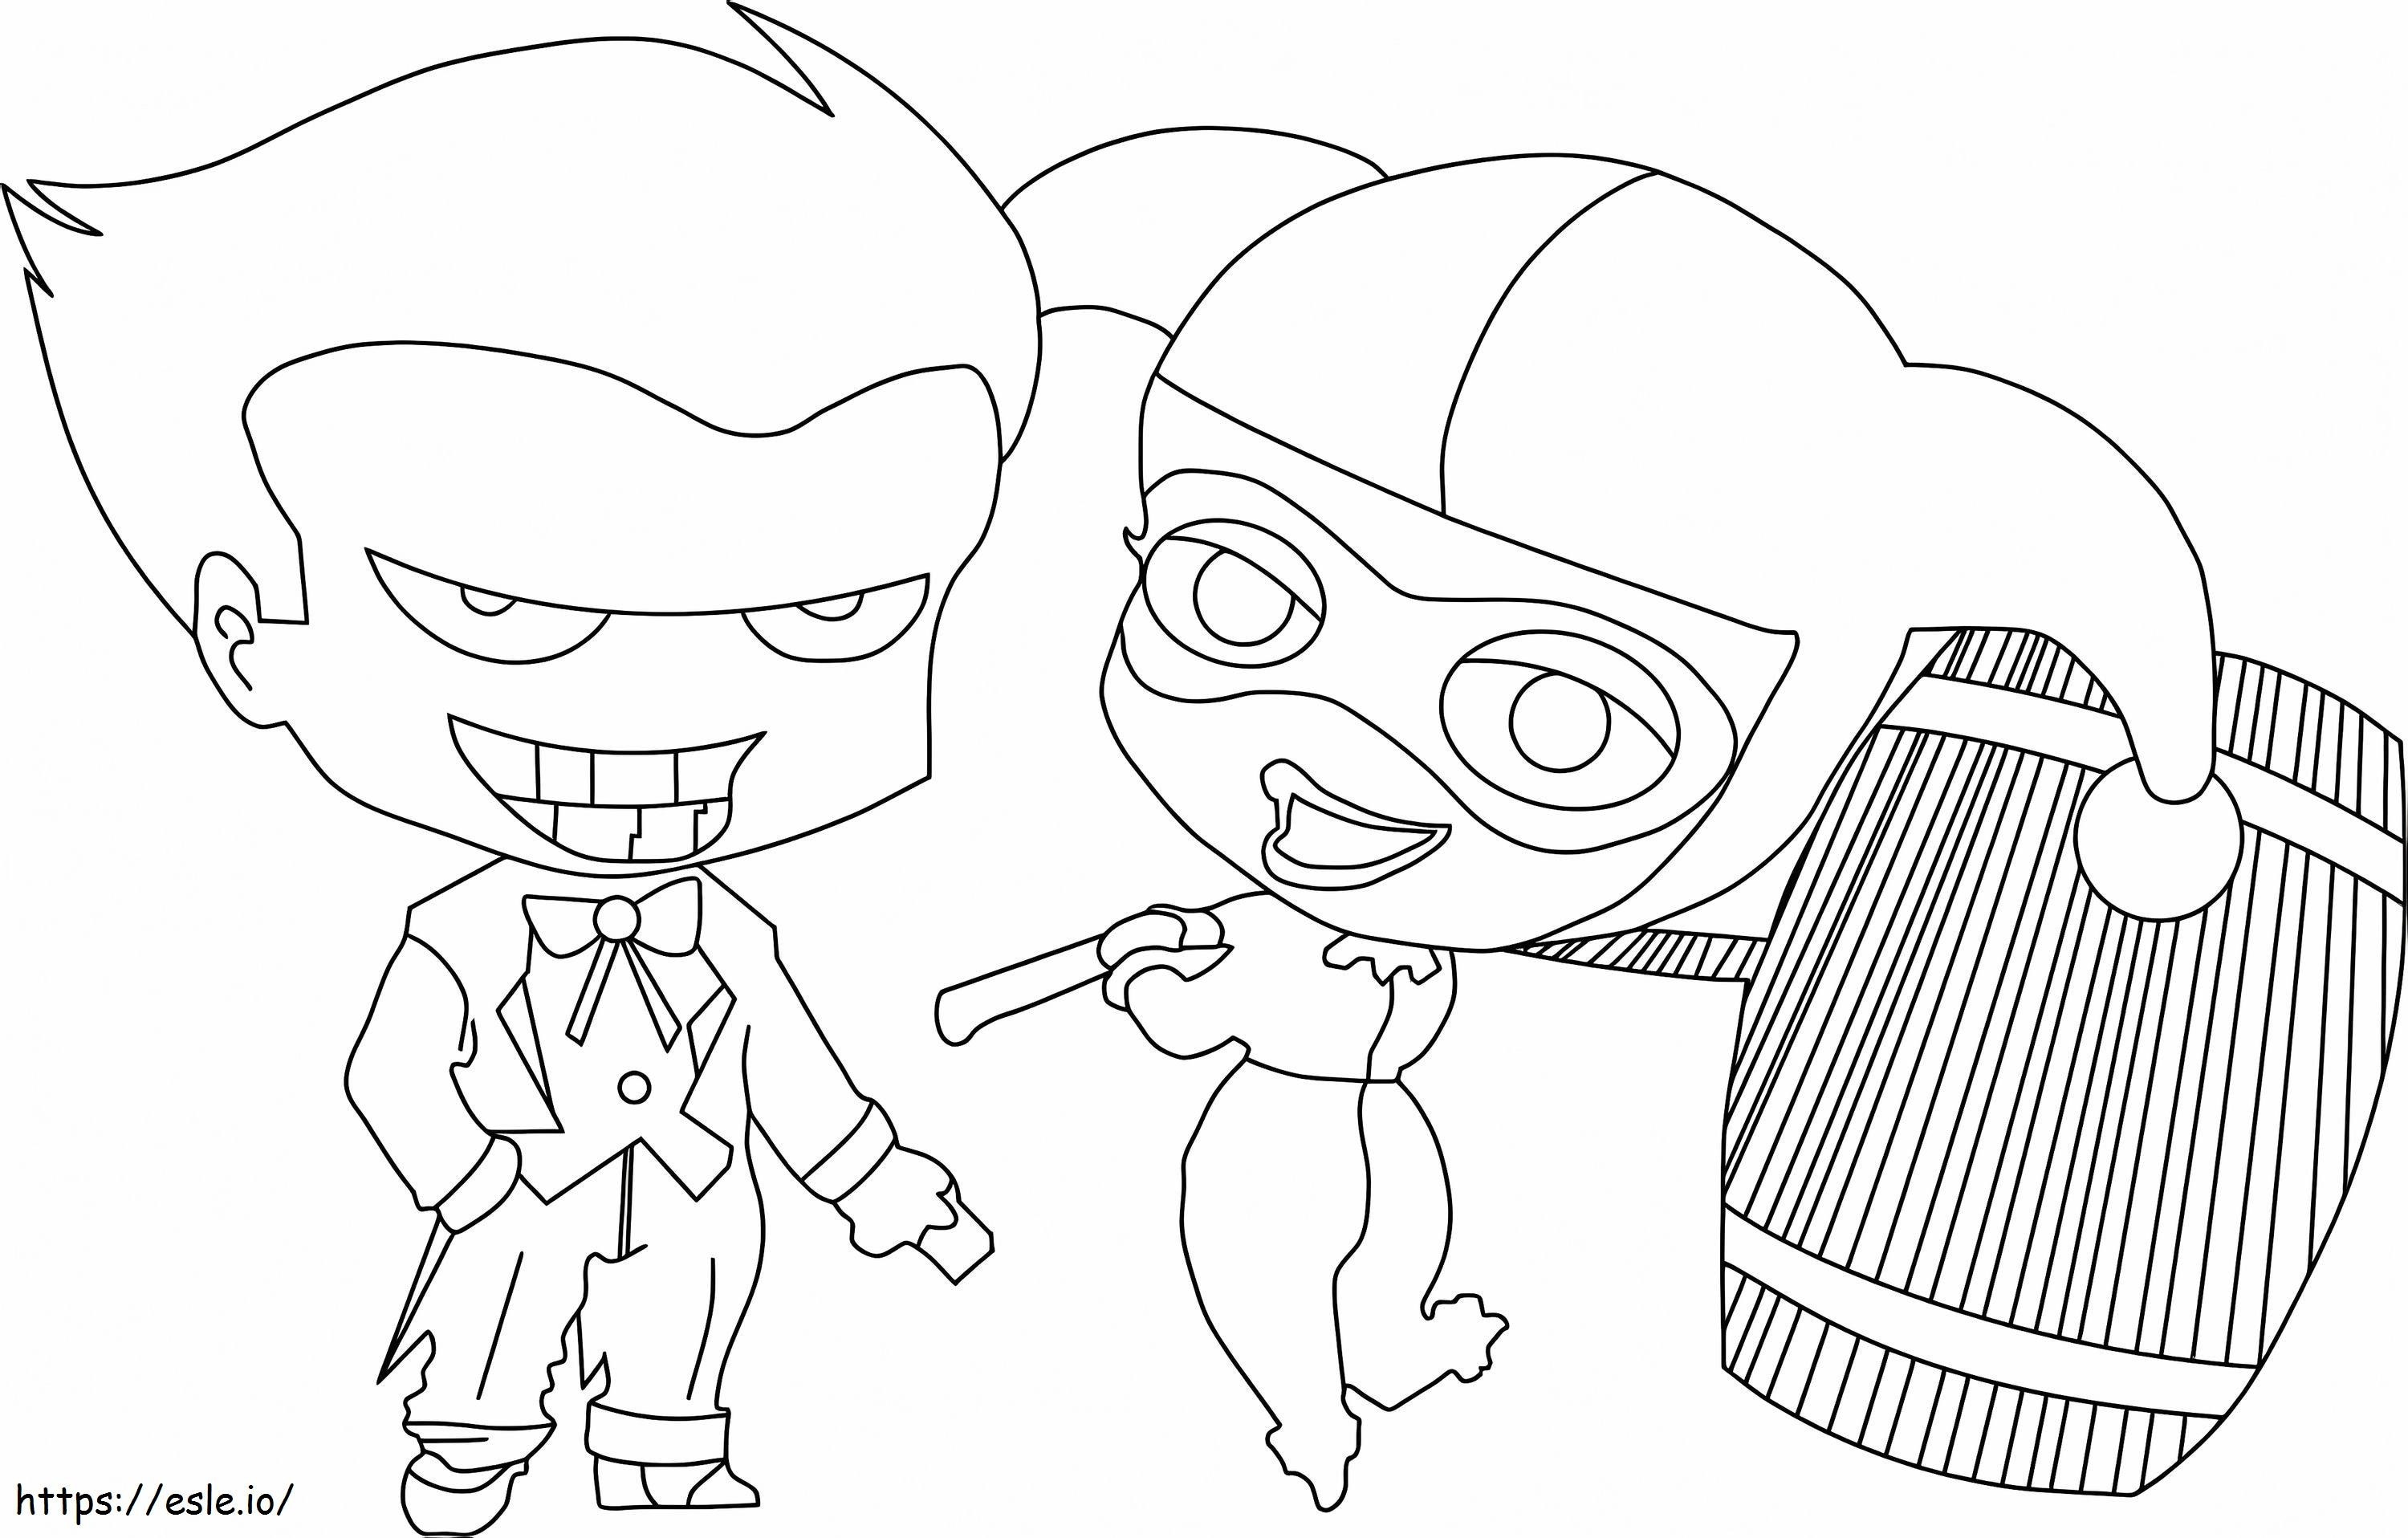 Chibi cartone animato Harley Quinn e Joker da colorare